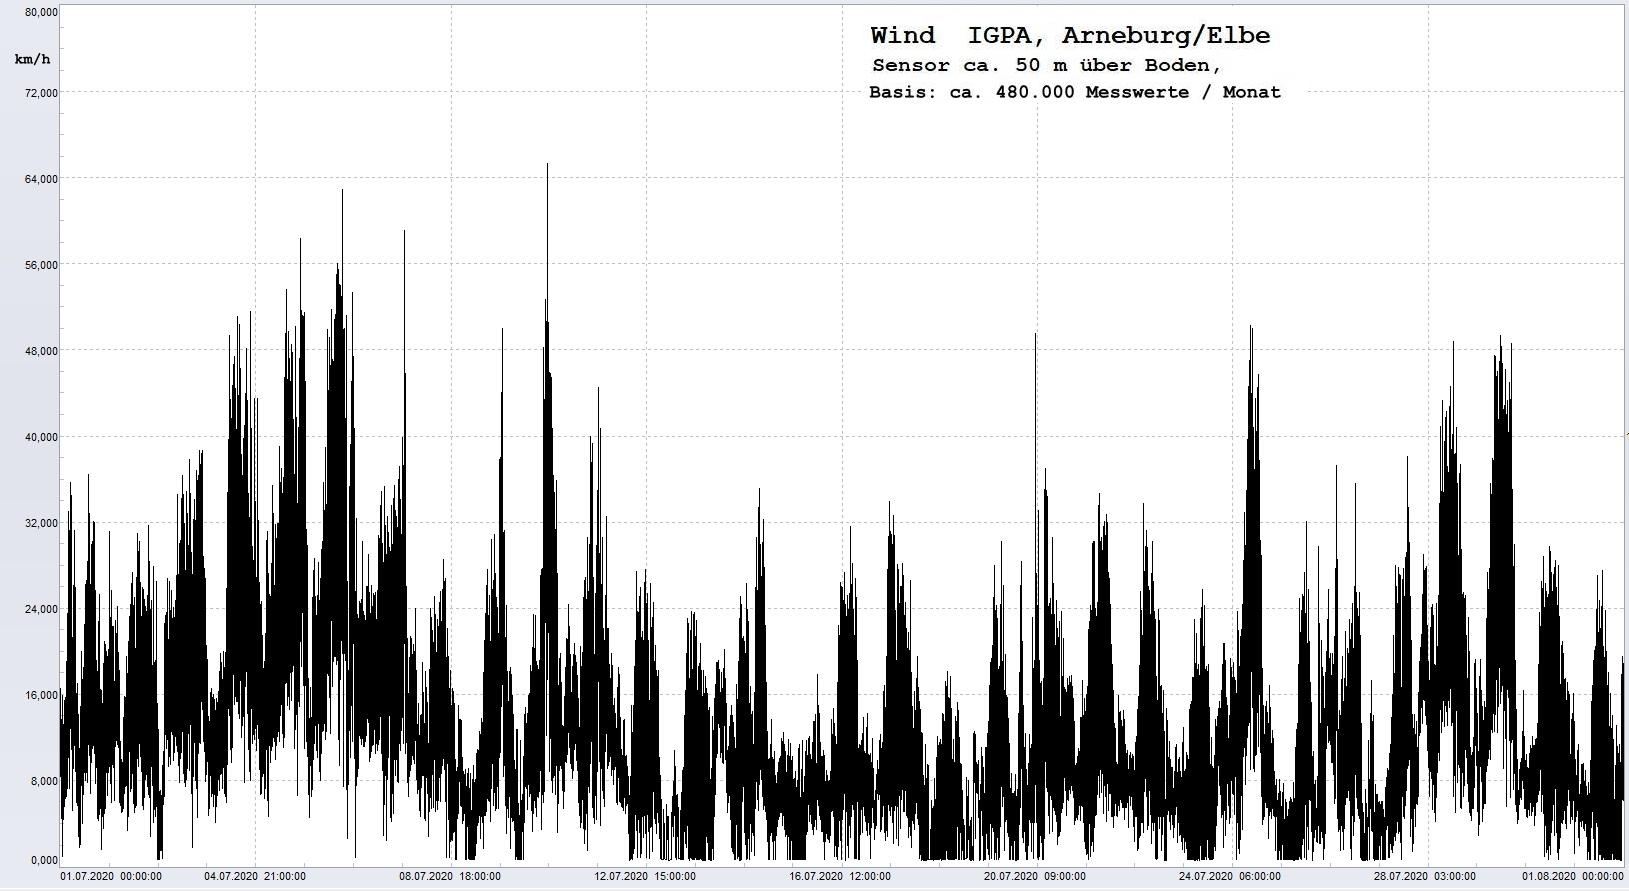 Arneburg Histogramm Winddaten Monat Juli 2020, 
  Sensor auf Gebude, ca. 50 m ber Erdboden, Basis: 5s-Aufzeichnung